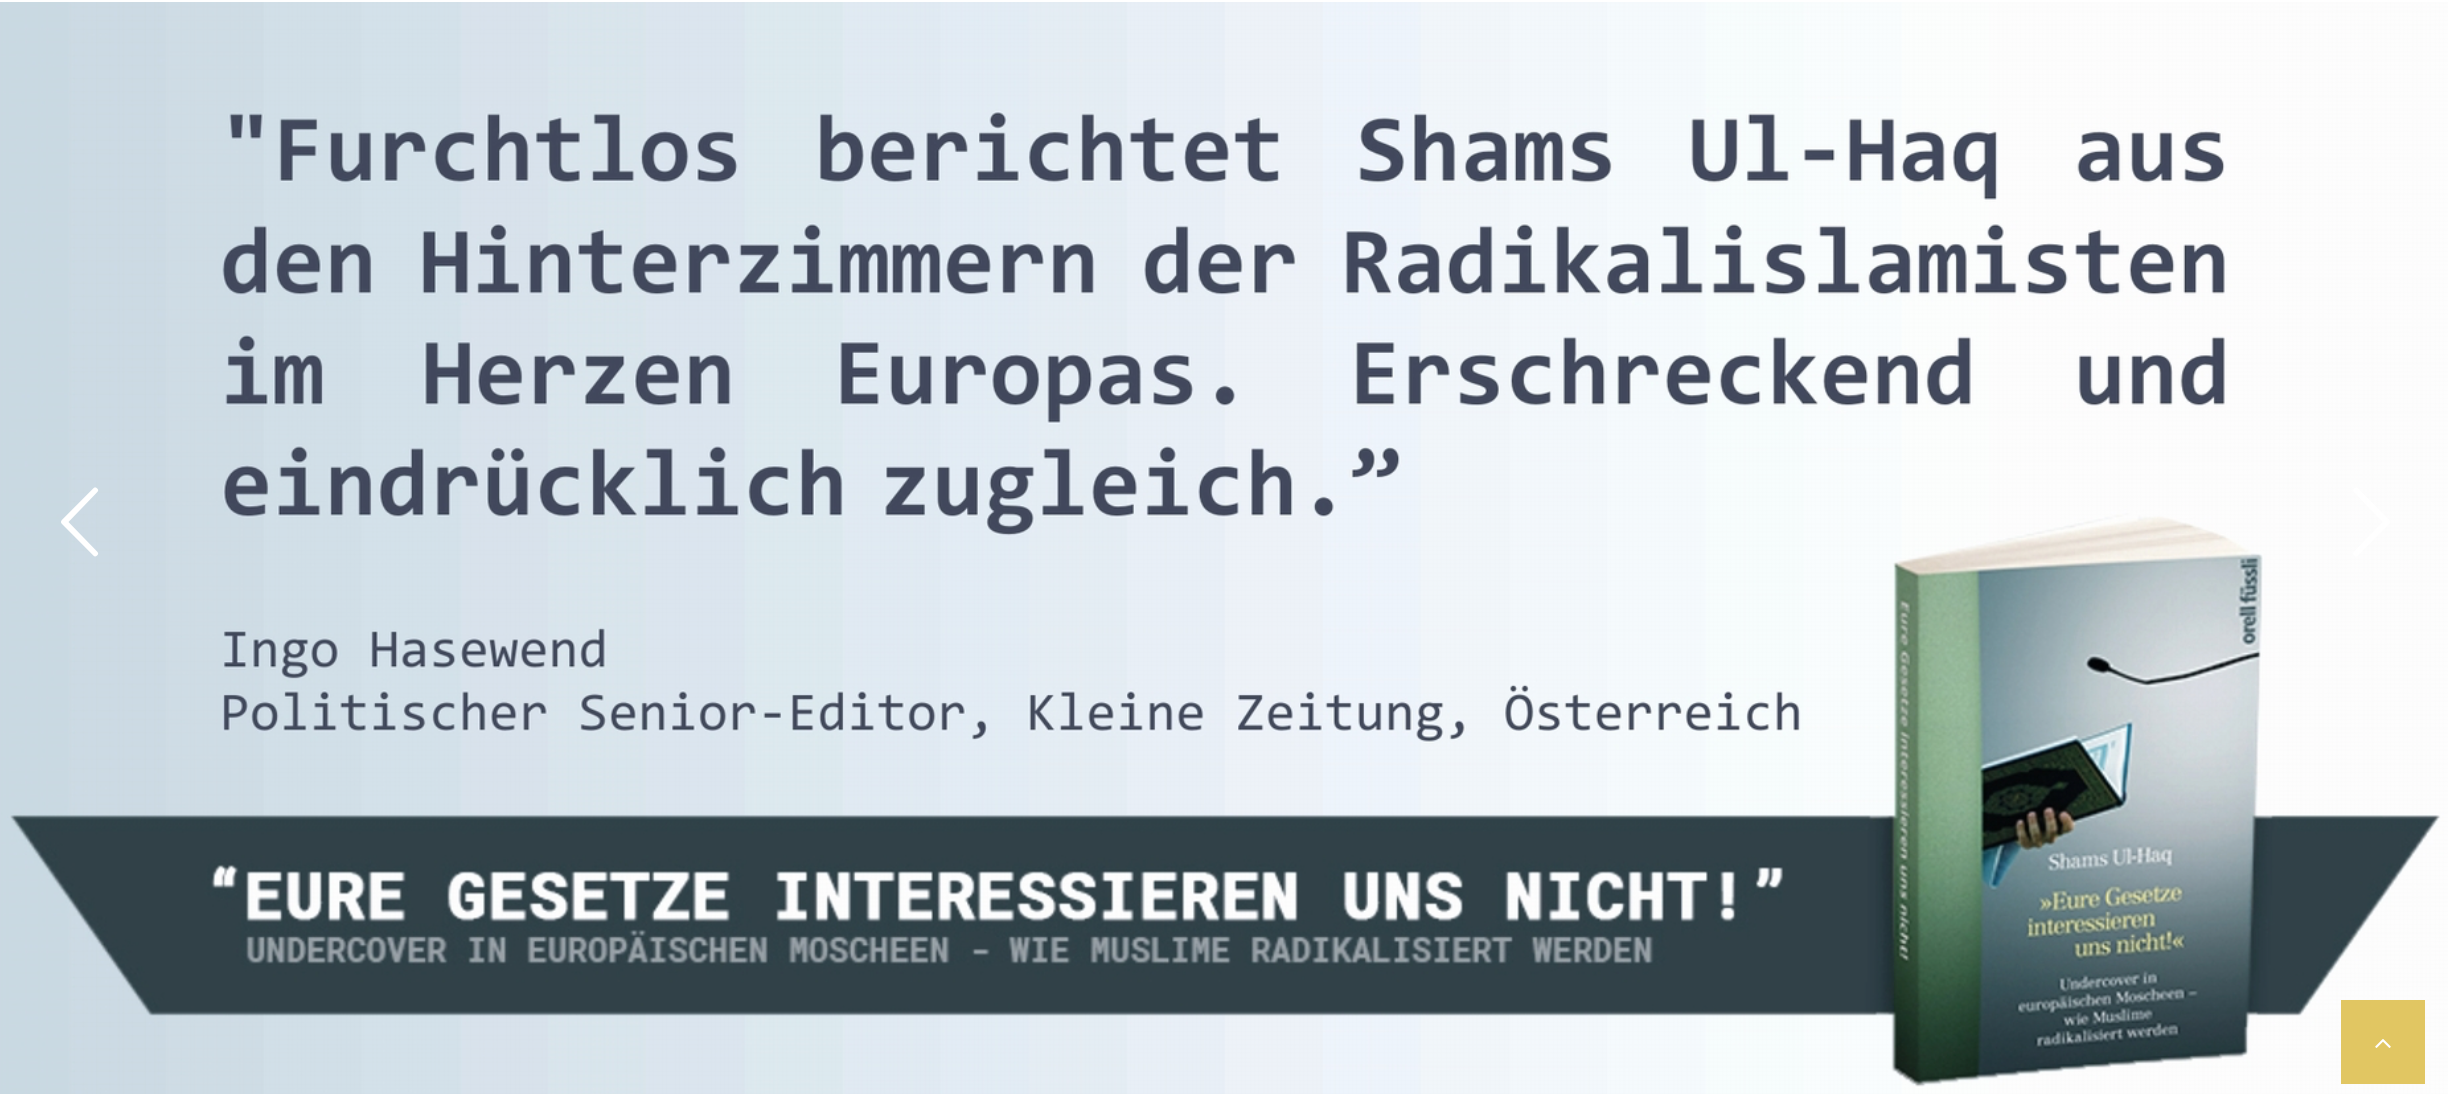 Zitat "Kleine Zeitung" (Screenshot Website https://shamsulhaq.de)